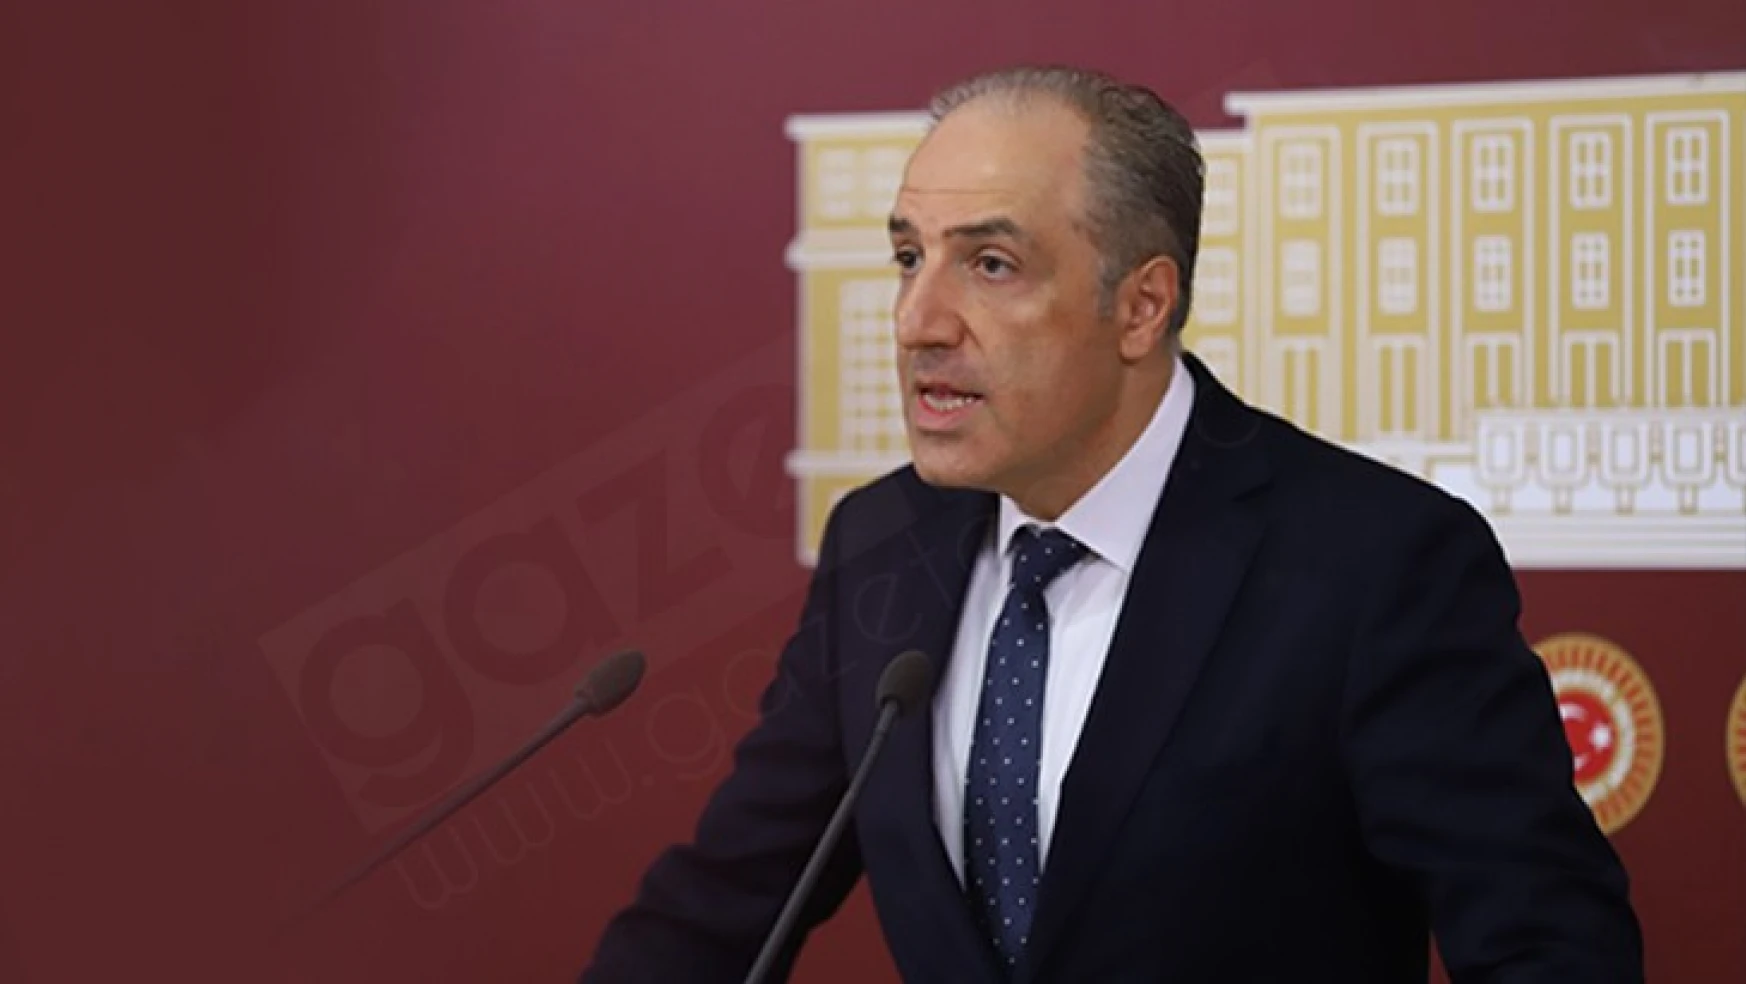 Milletvekili Mustafa Yeneroğlu: PCR testi gibi önlemler kanunla düzenlenmediği sürece hukuka aykırı